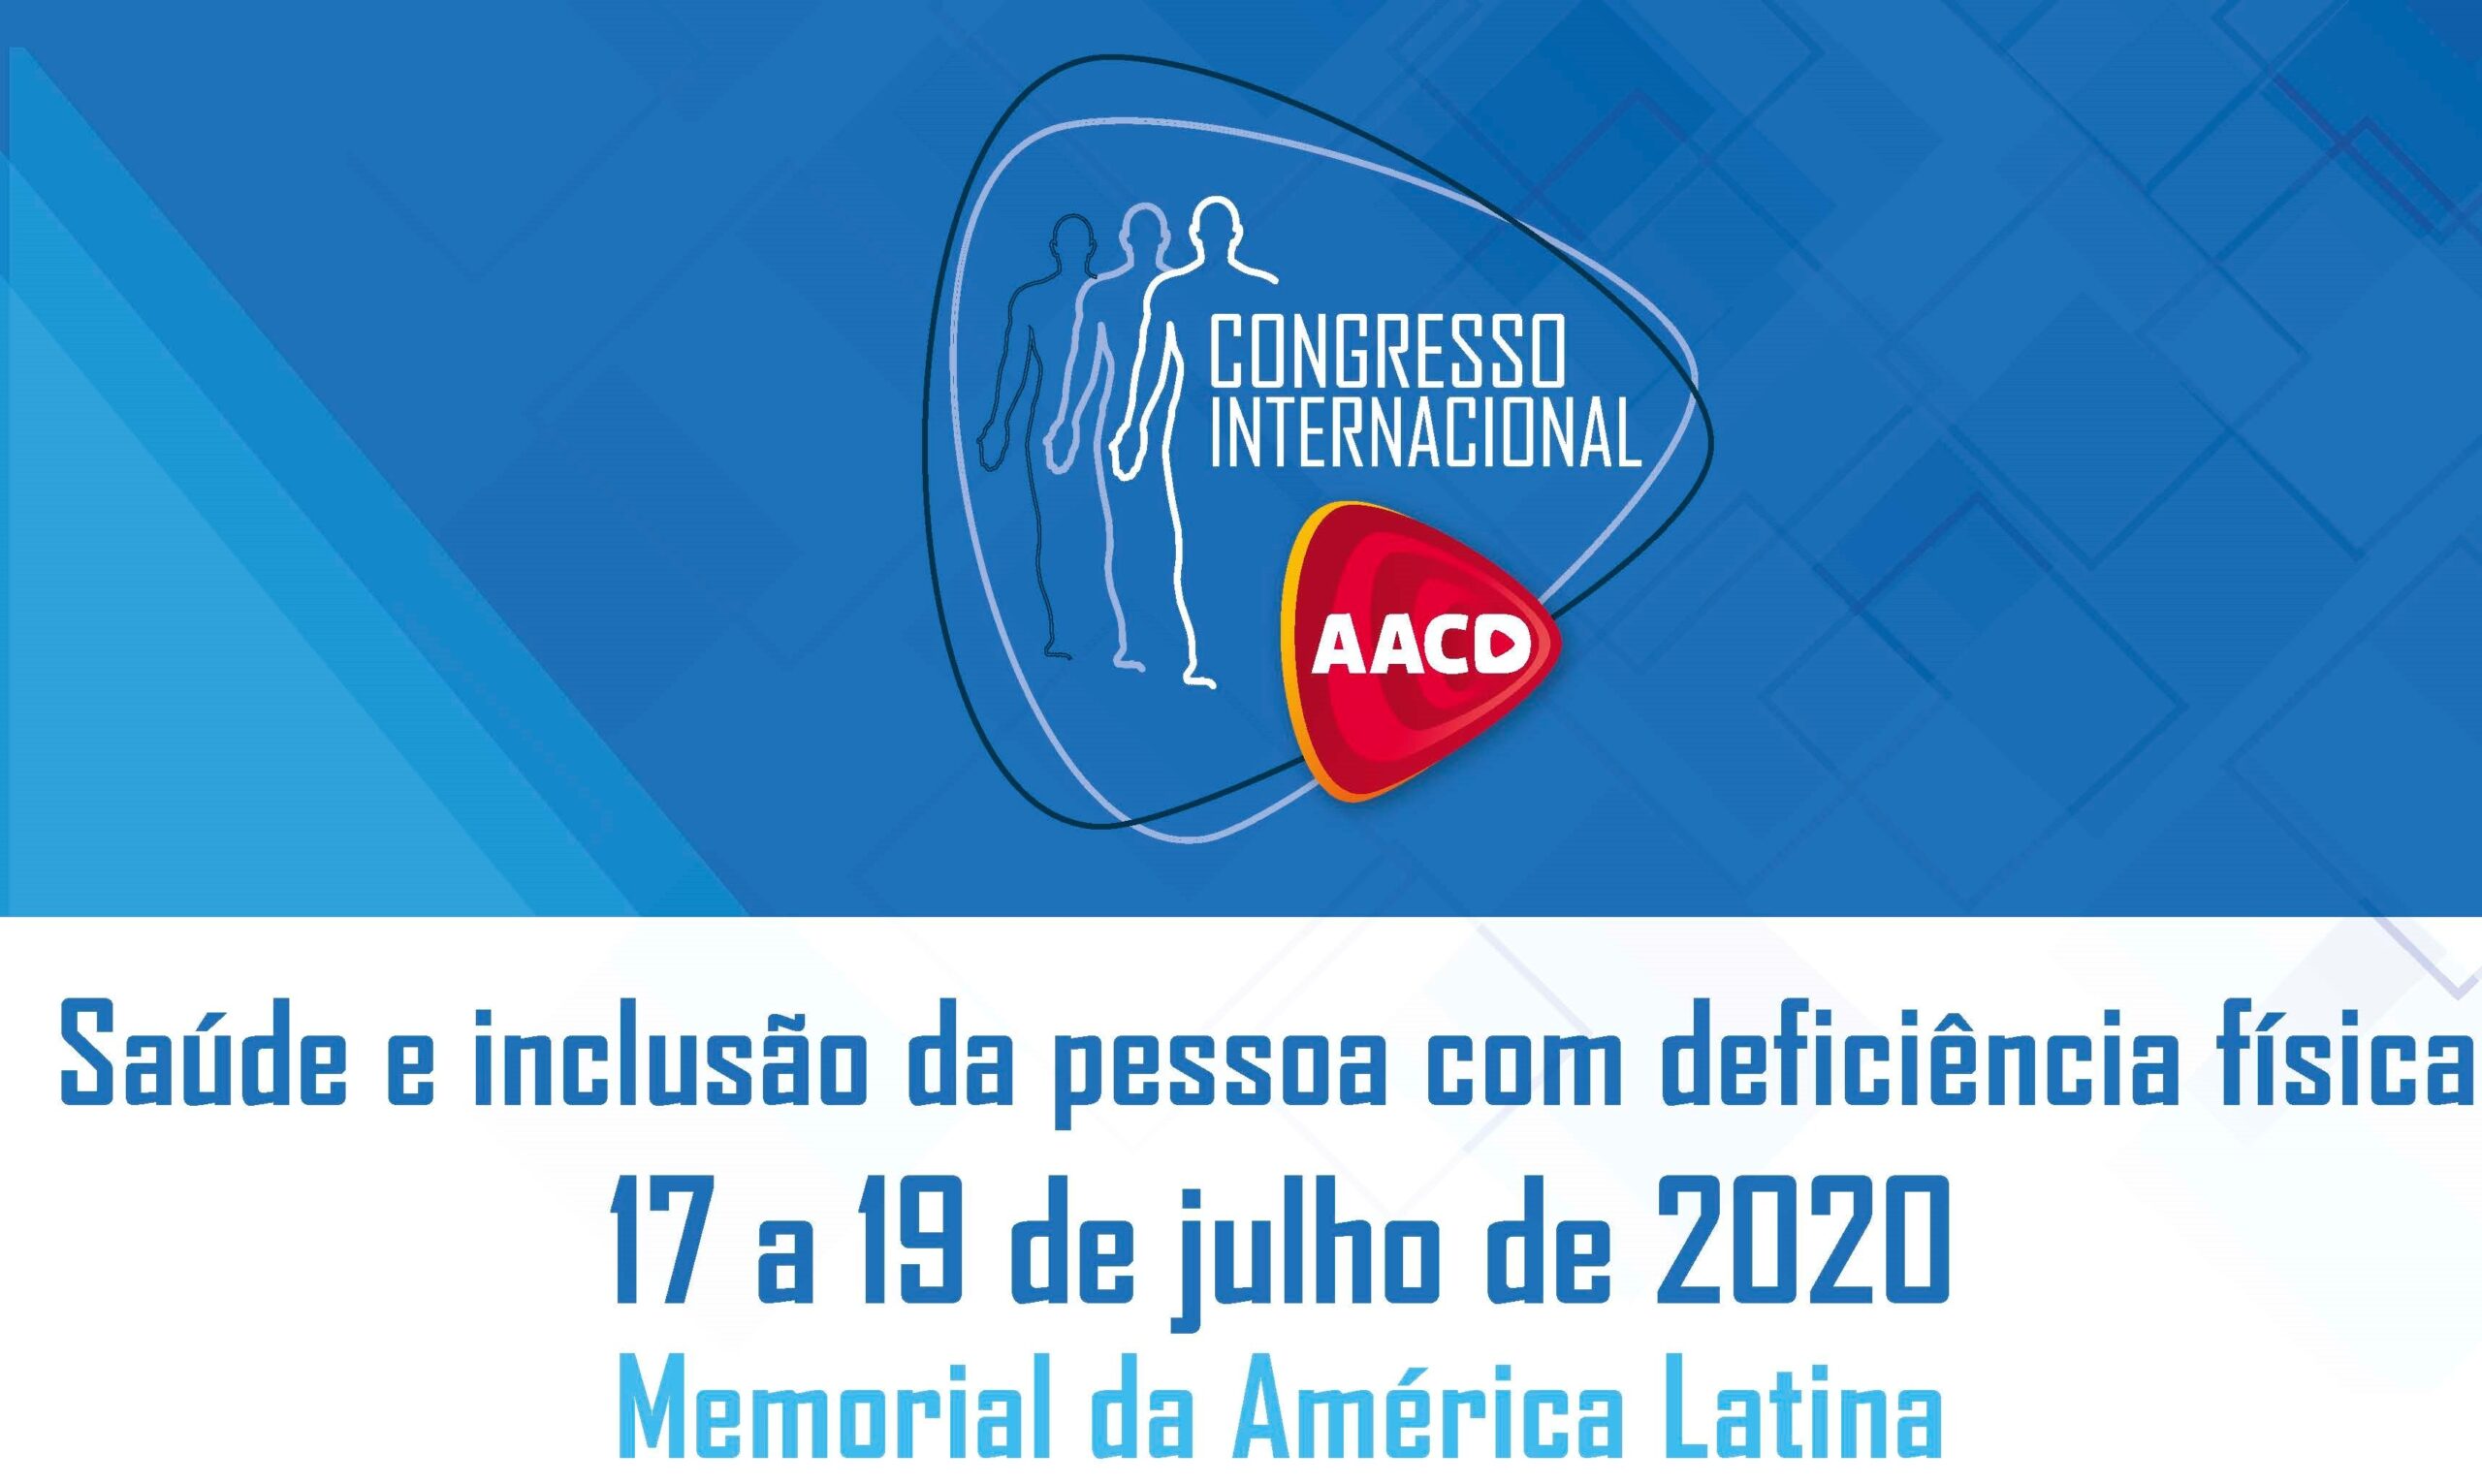 Congresso Internacional AACD